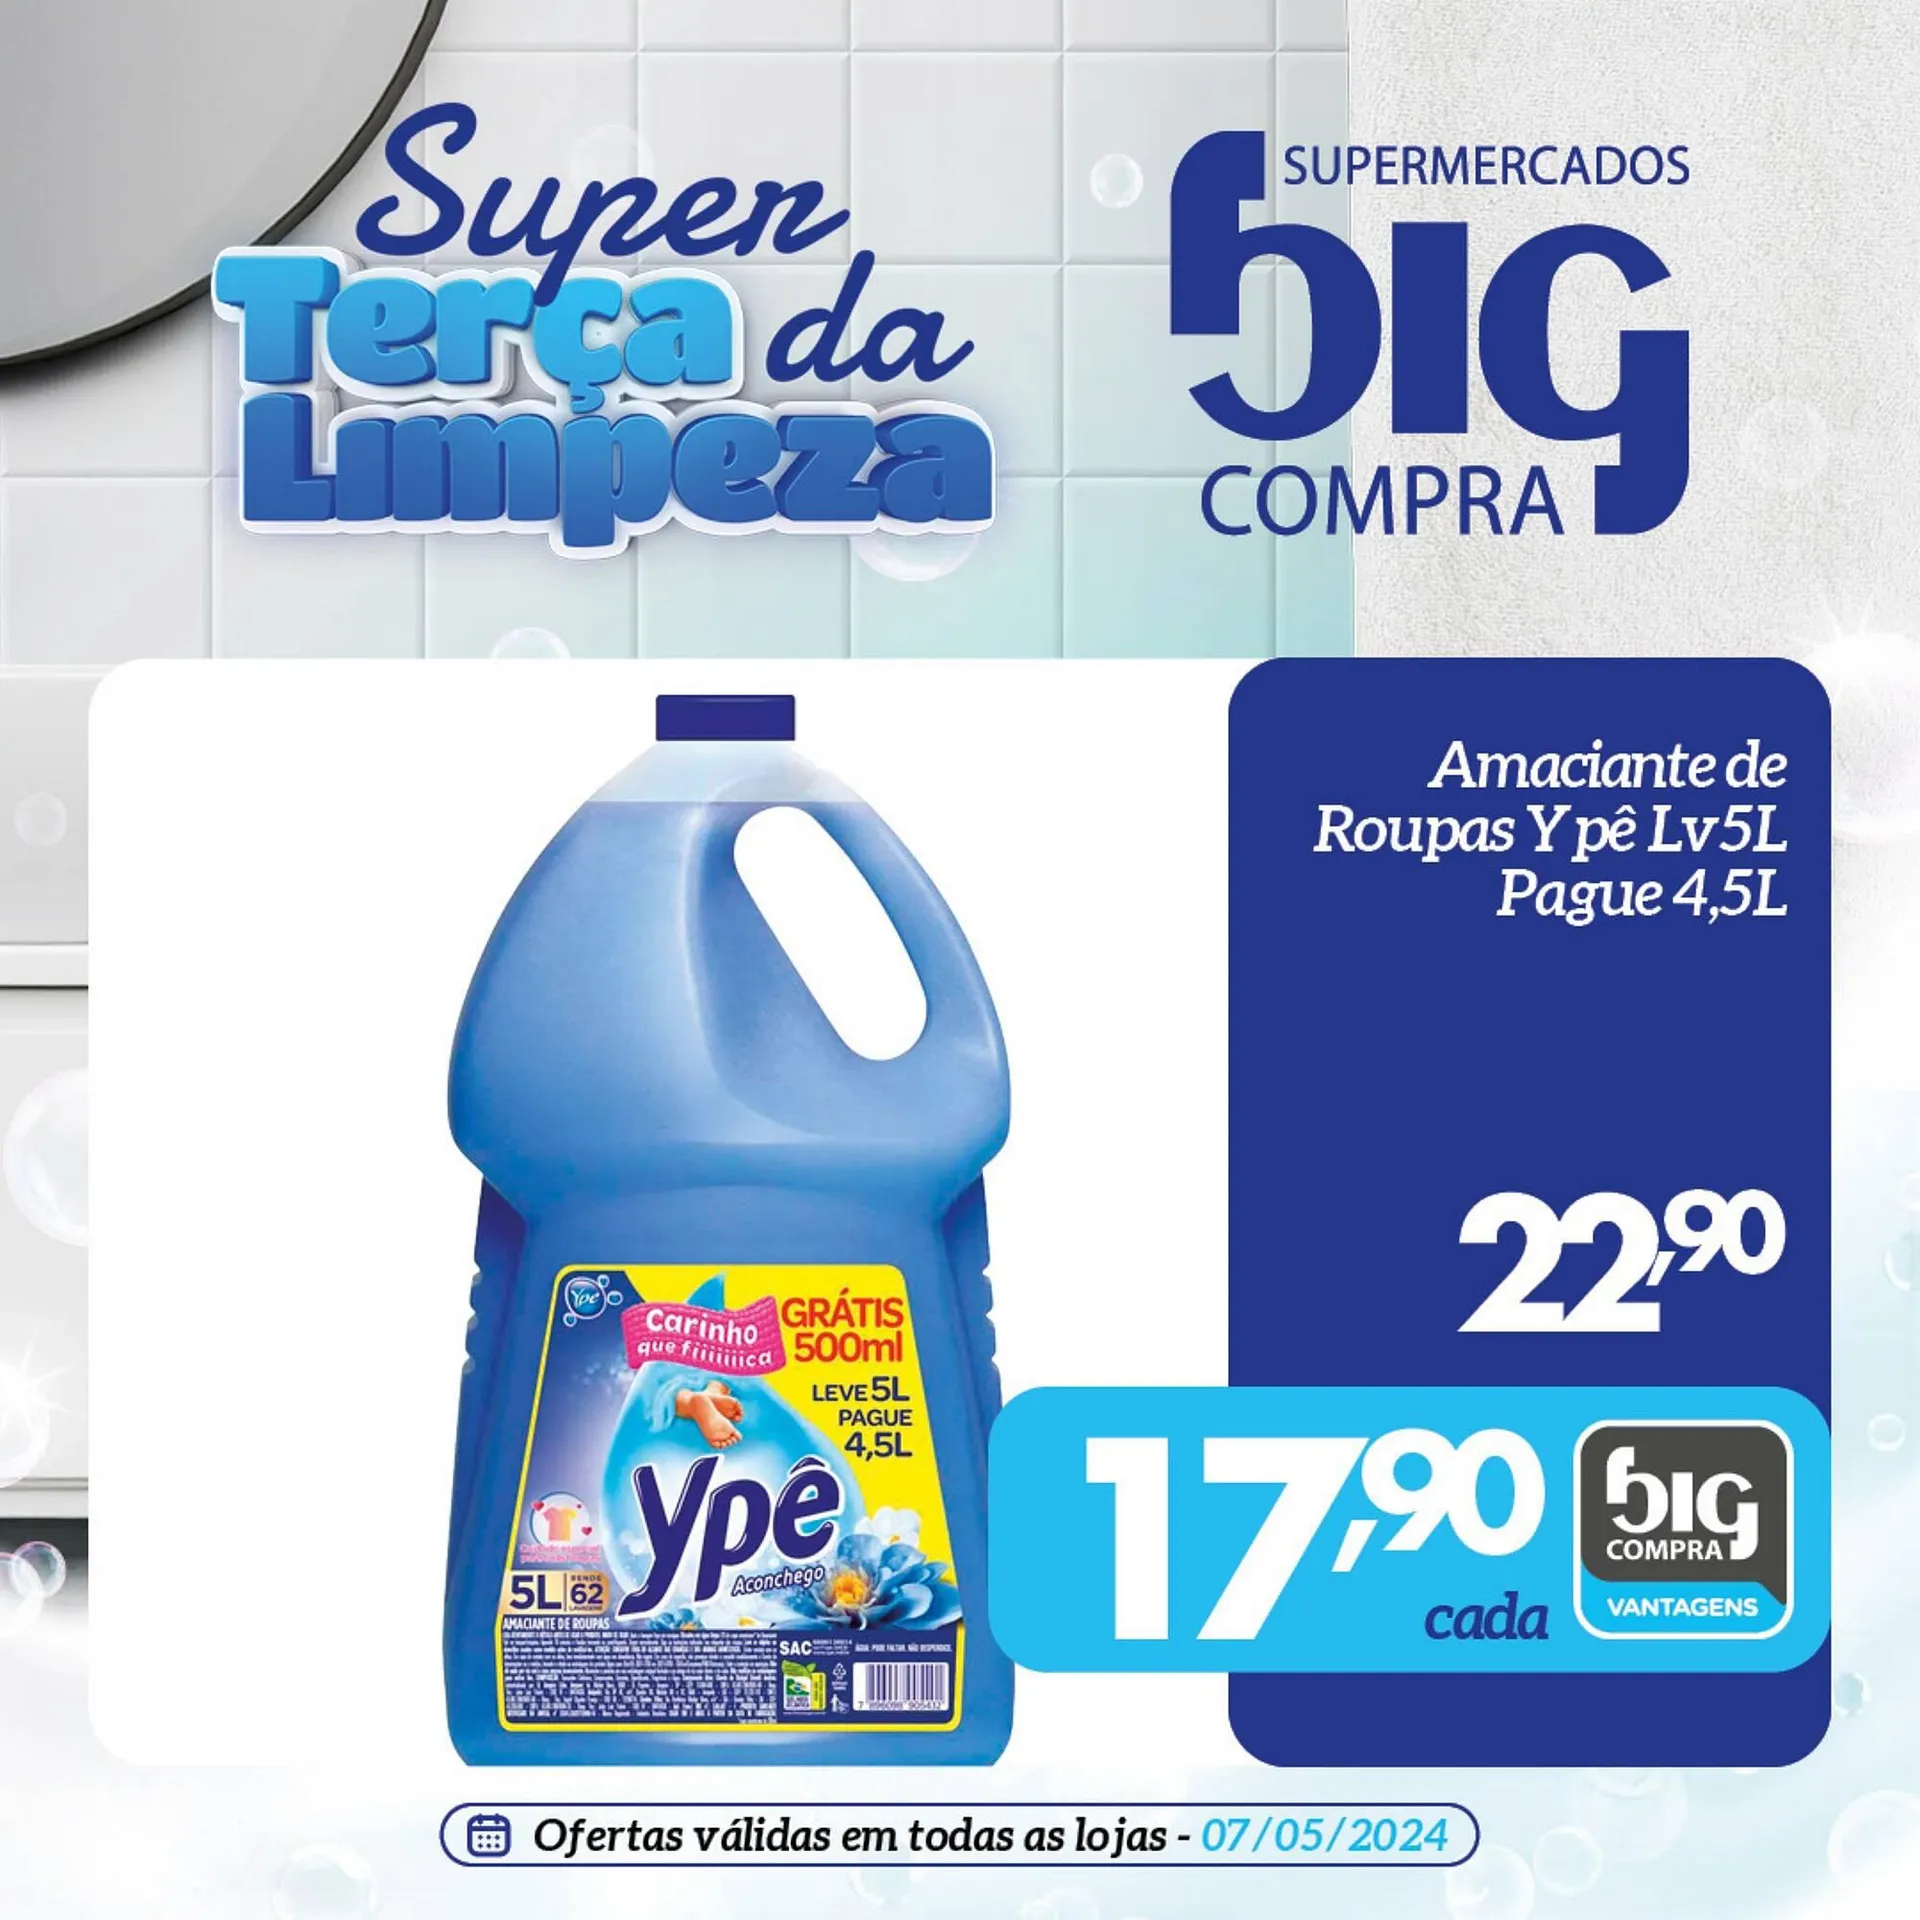 Catálogo Supermercados Big Compra - 1